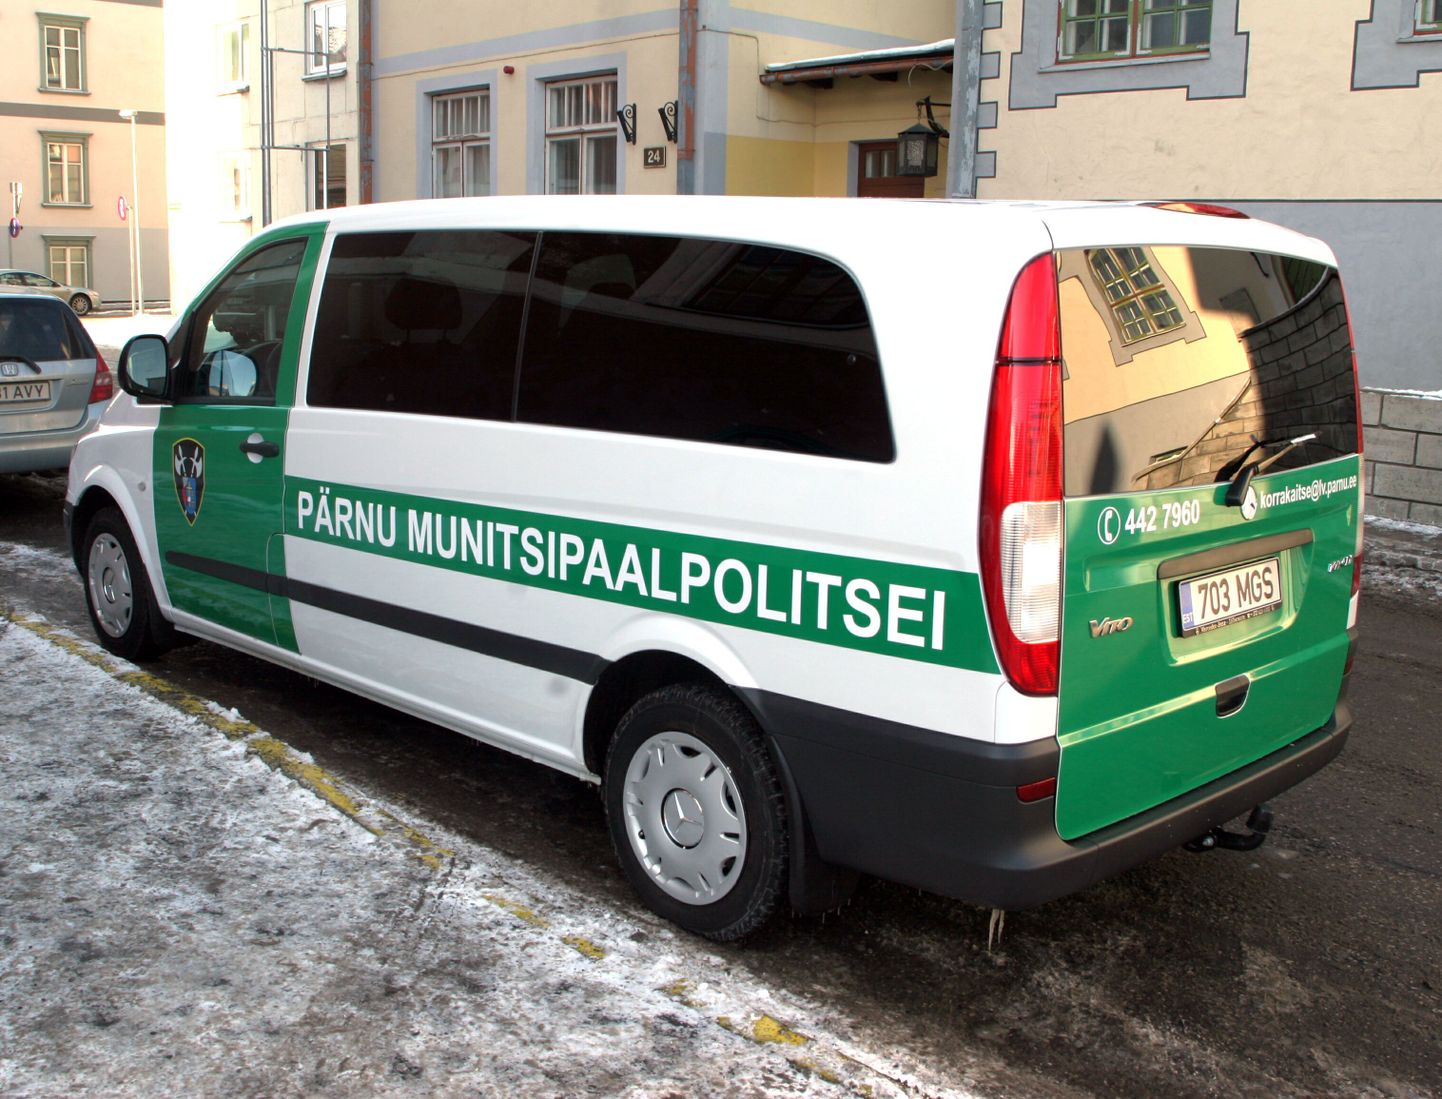 Pärnu munitsipaalpolitsei buss.